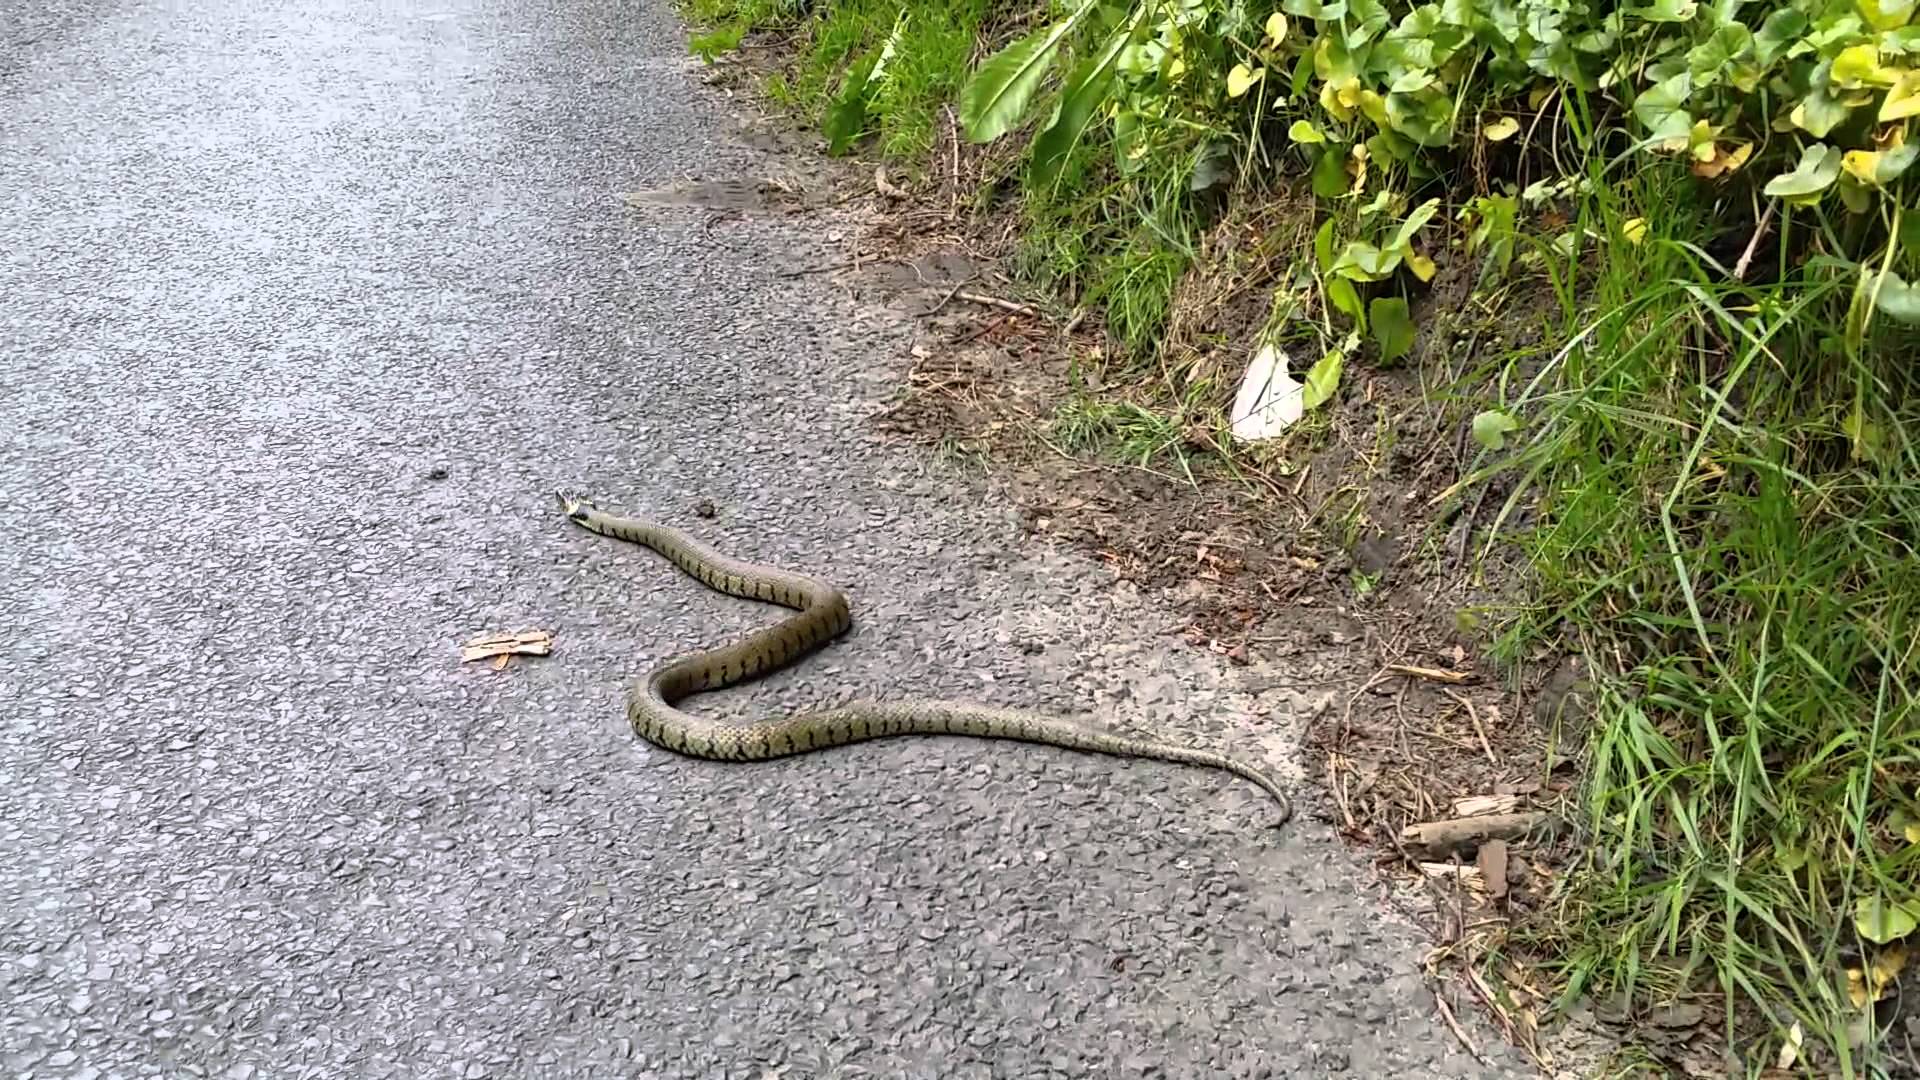 Wild Snake spotted on UK road Market Lavington - YouTube